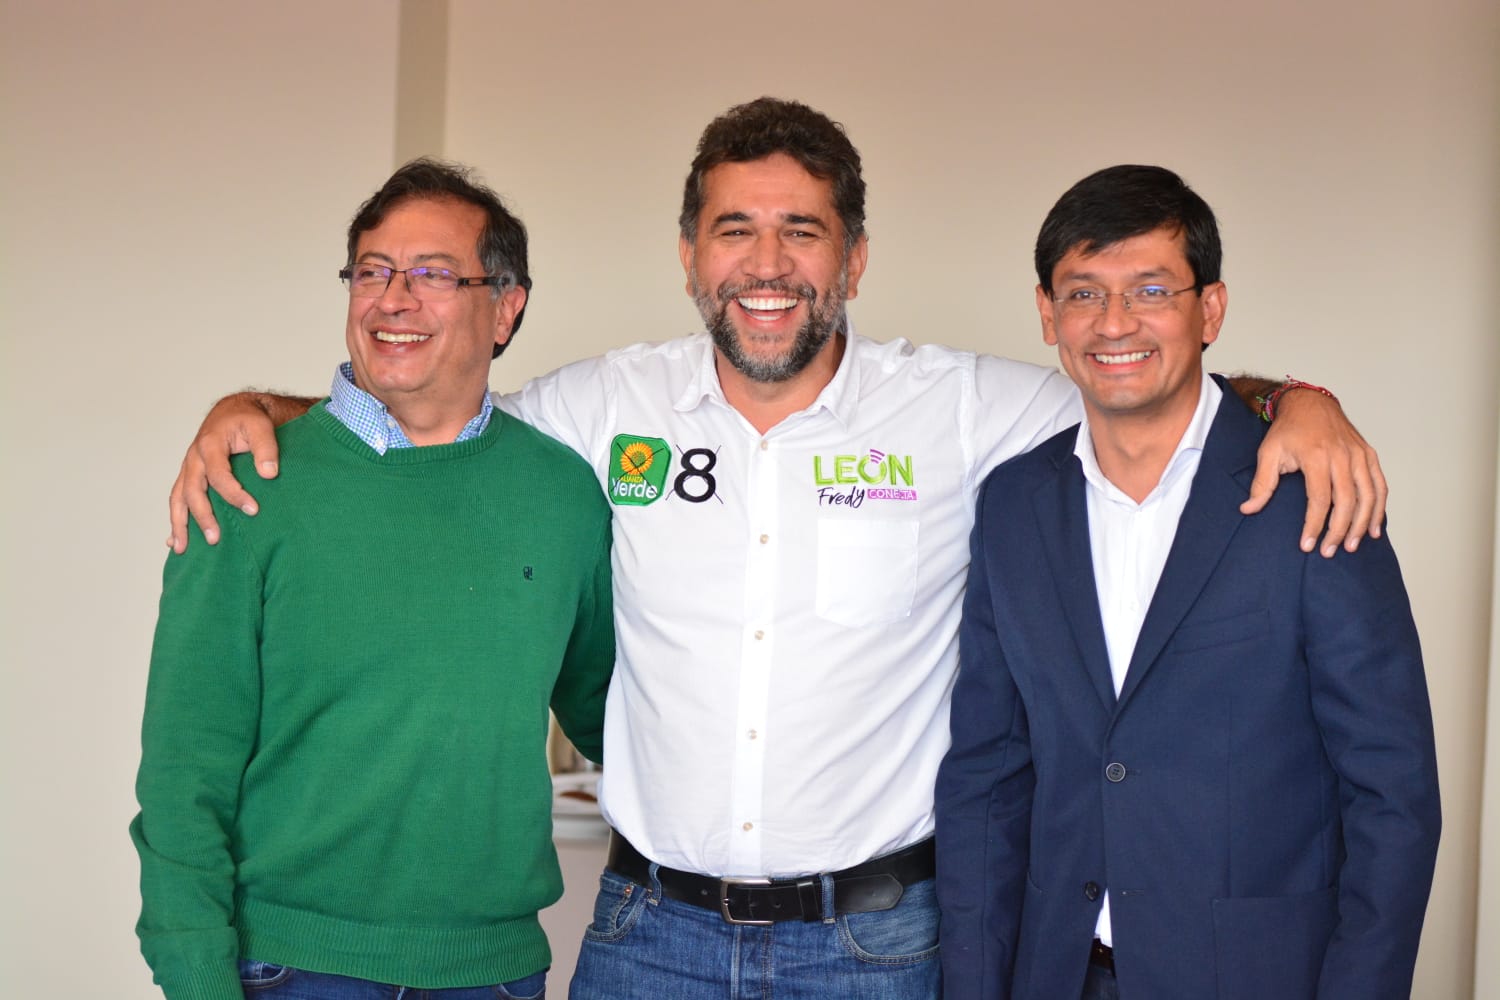 León Fredy Muñoz, acompañado de Gustavo Petro y Camilo Romero
Twitter - @LeonFredyM